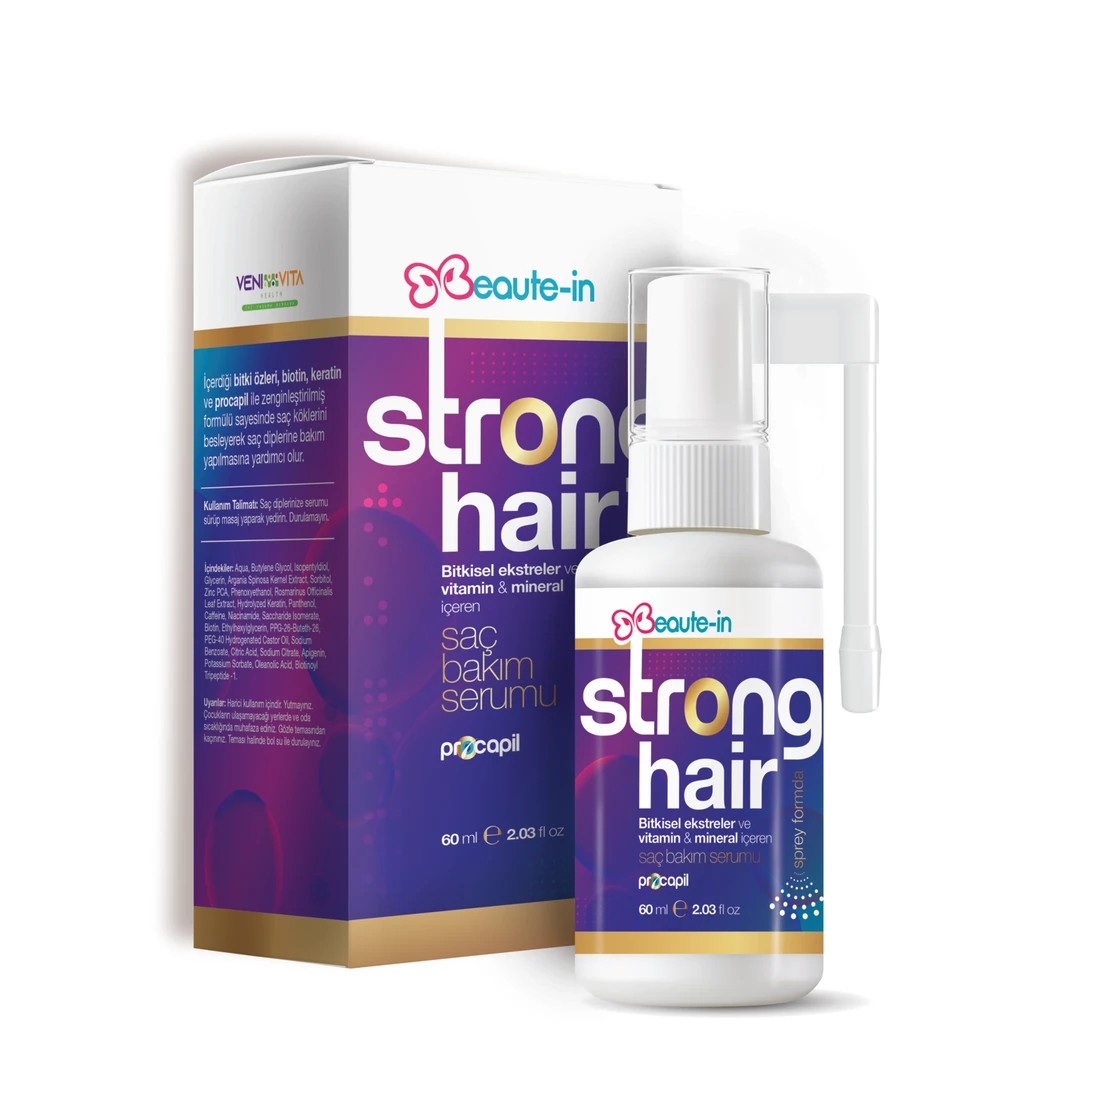 Herbasist Beaute-In Strong Hair Sprey Formunda Saç Bakım Serumu